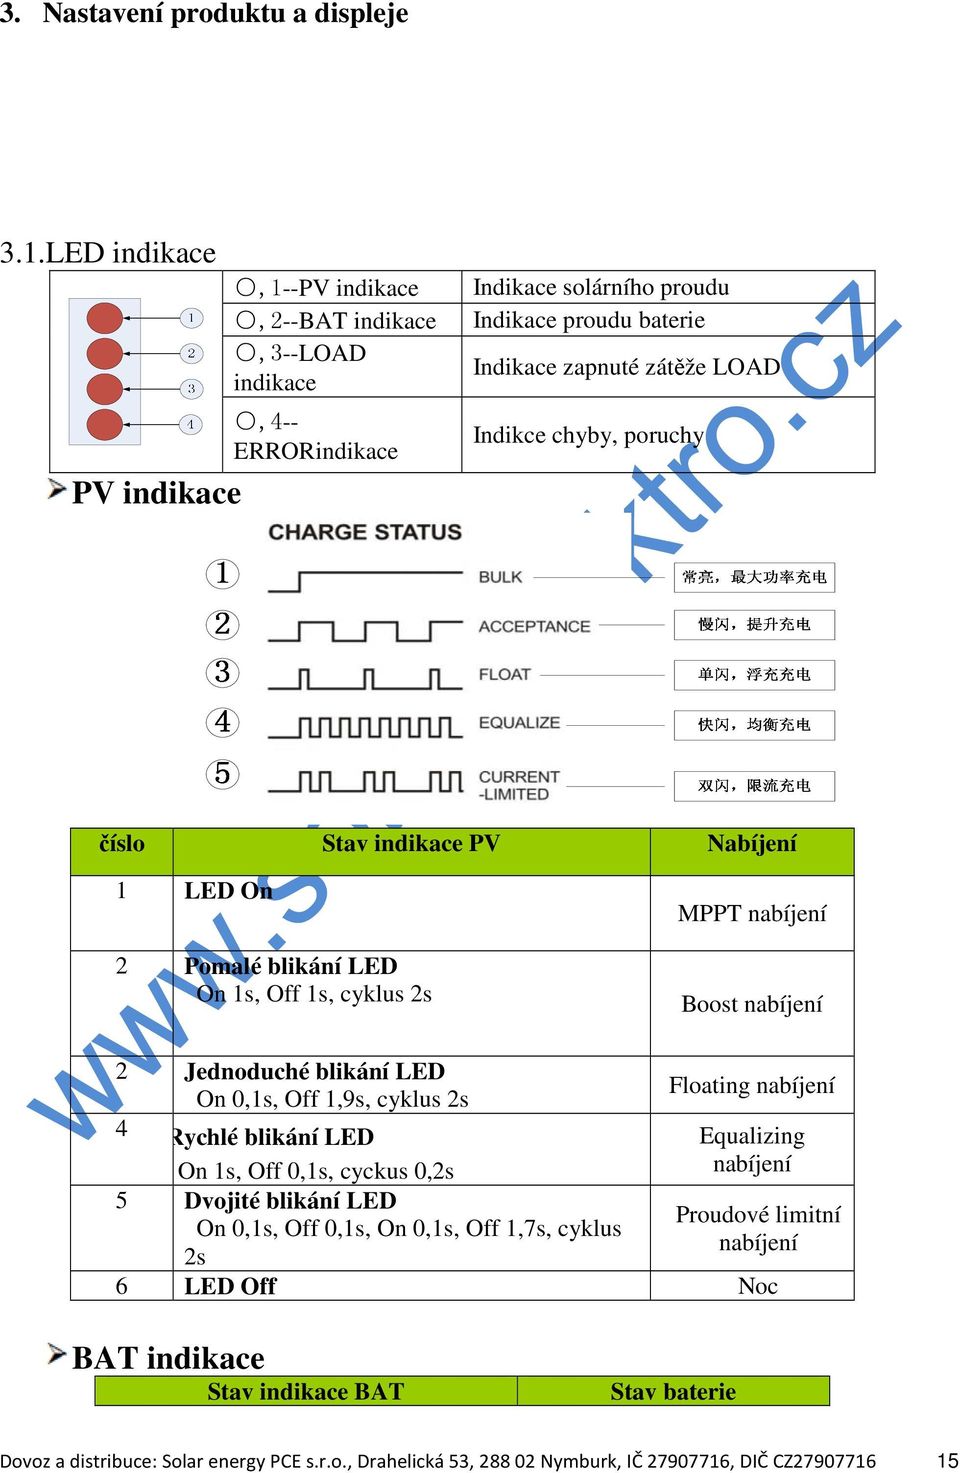 poruchy číslo Stav indikace PV Nabíjení 1 LED On 2 Pomalé blikání LED On 1s, Off 1s, cyklus 2s MPPT nabíjení Boost nabíjení 2 Jednoduché blikání LED On 0,1s, Off 1,9s, cyklus 2s Floating